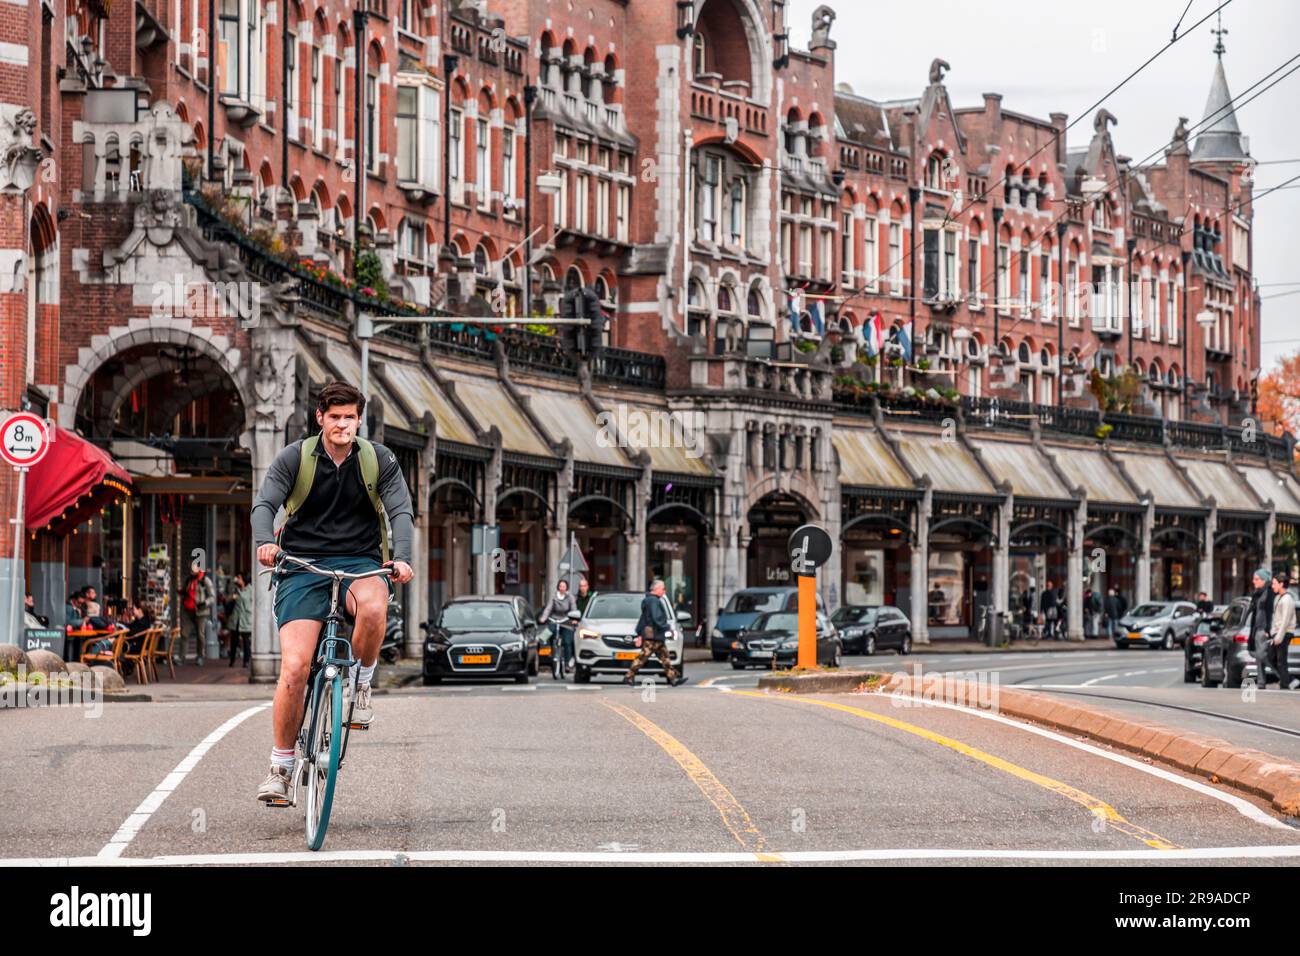 Amsterdam, Niederlande - 17. Oktober 2021: Unidentifizierter junger Mann auf einem Fahrrad in den Straßen Amsterdams. Radfahren ist die wichtigste Art des Transports Stockfoto